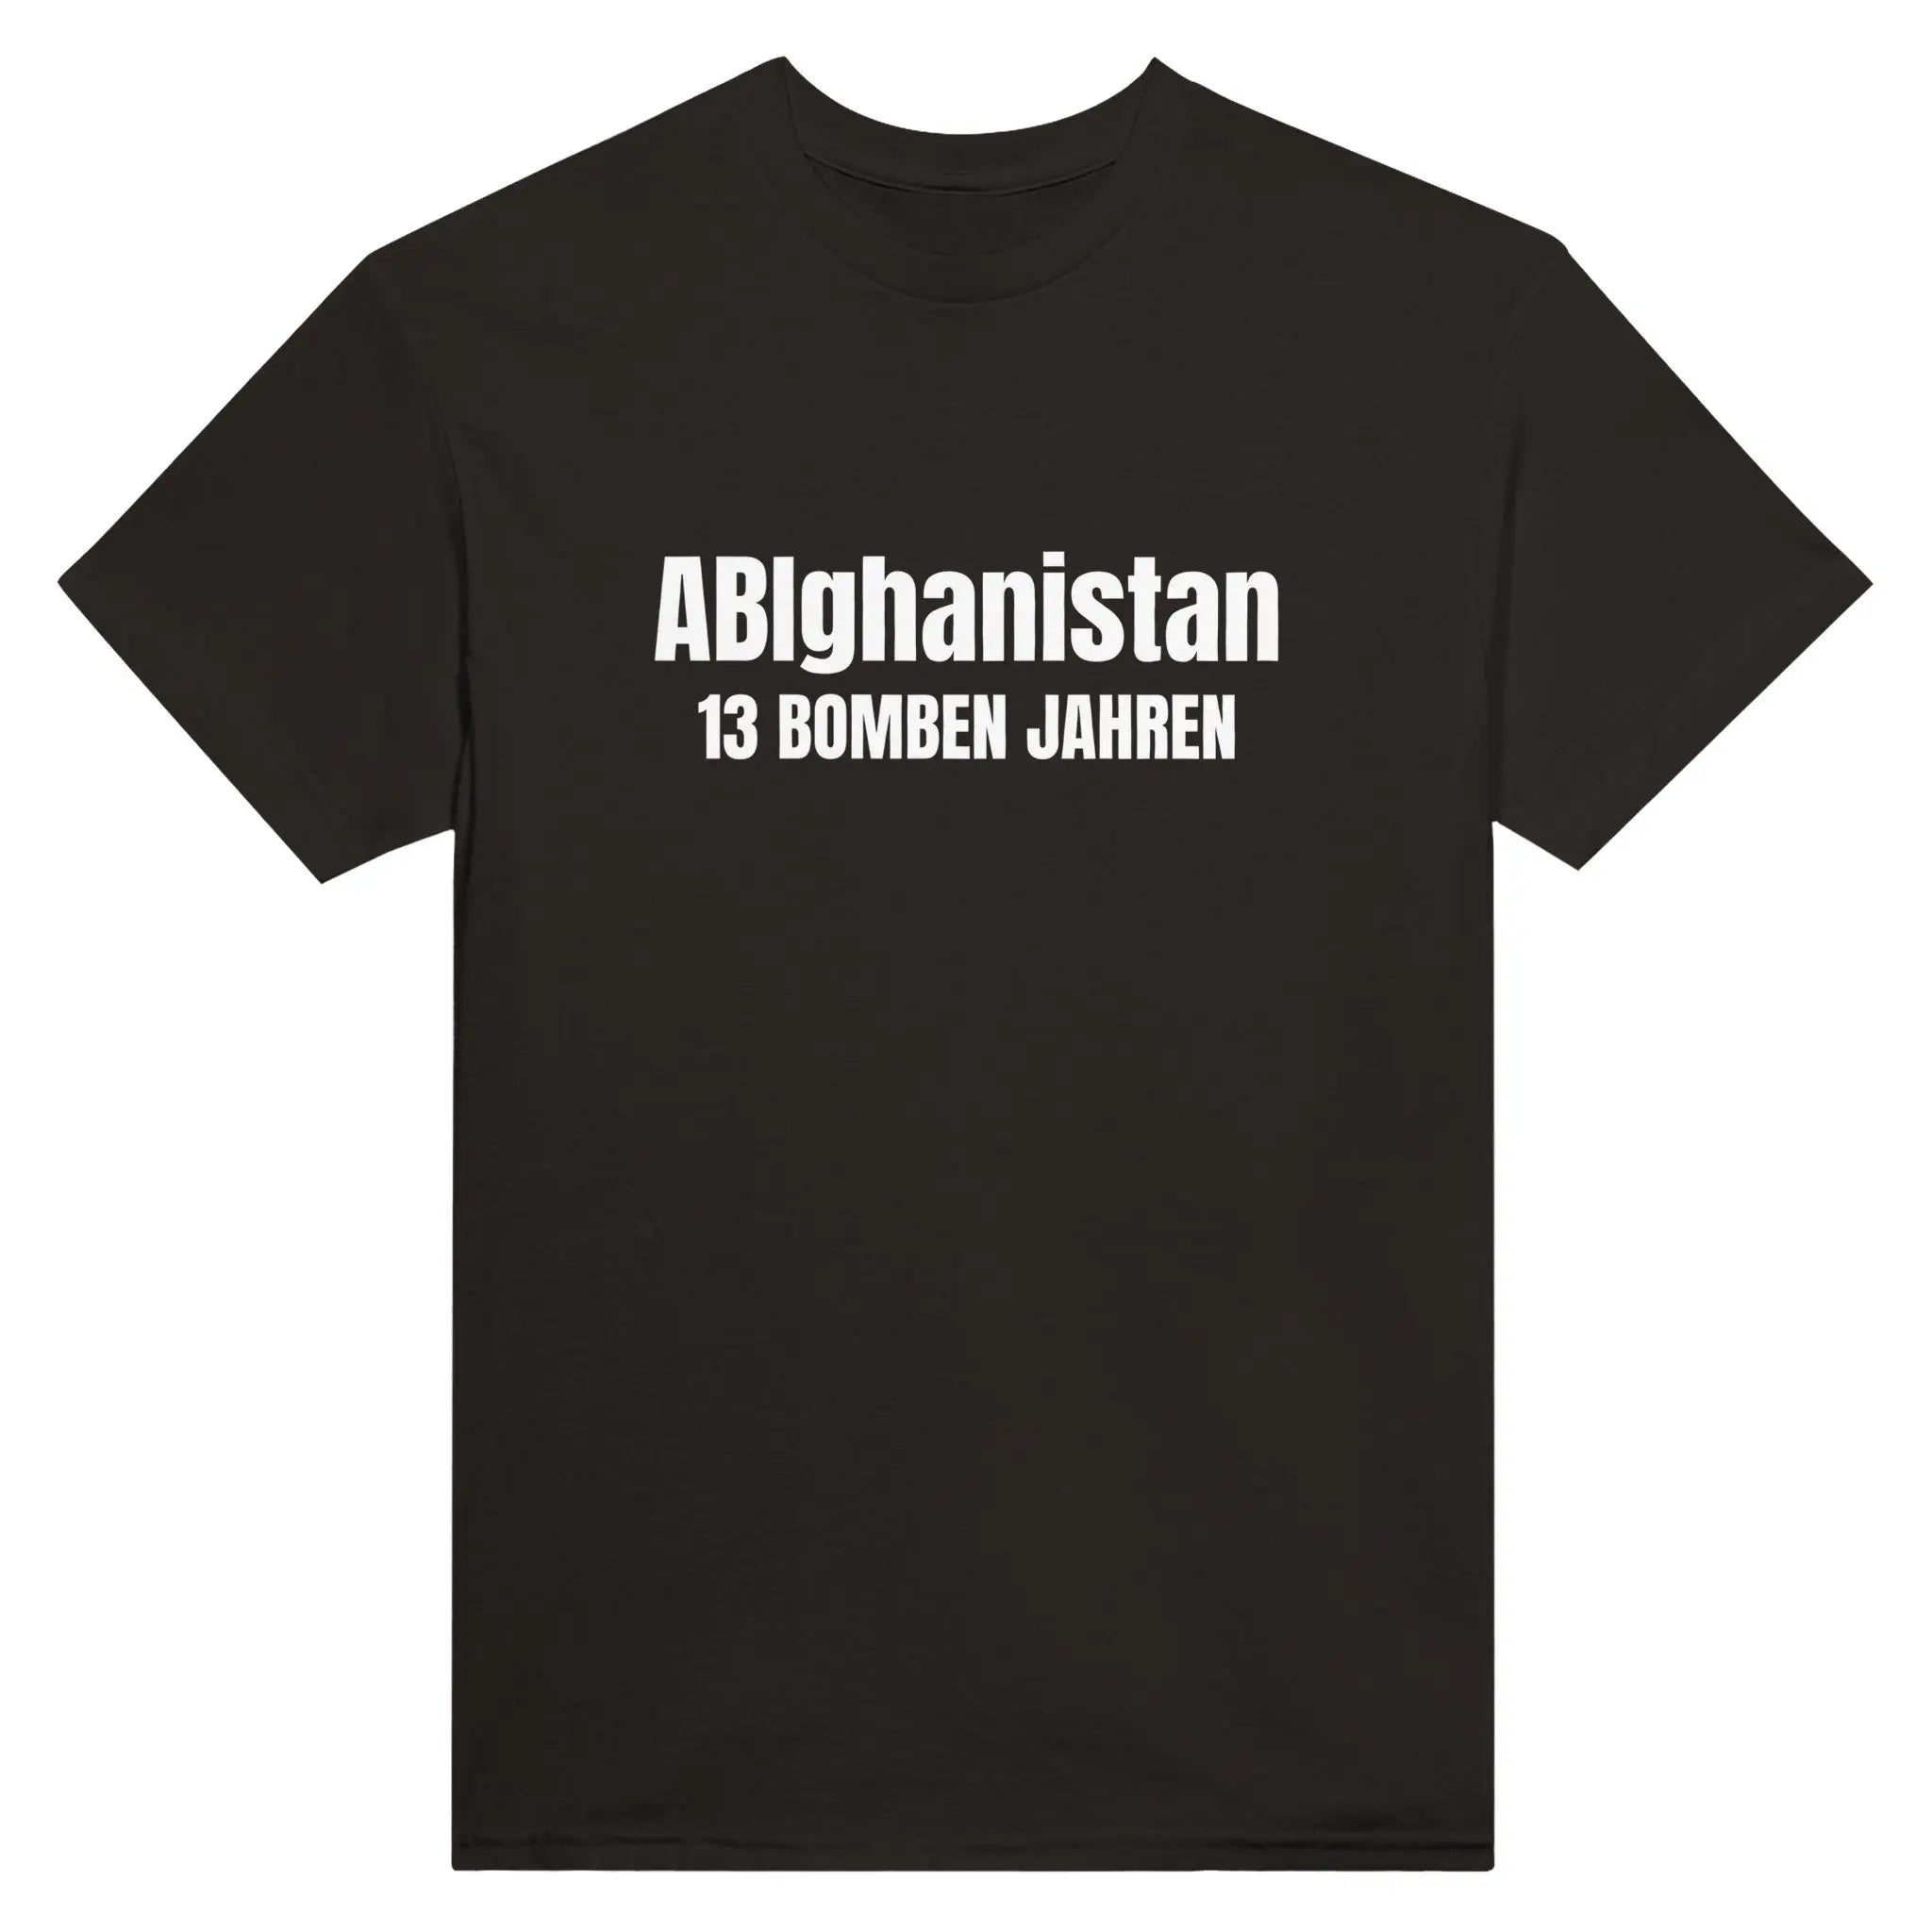 ABIghanistan - 13 Bomben Jahre